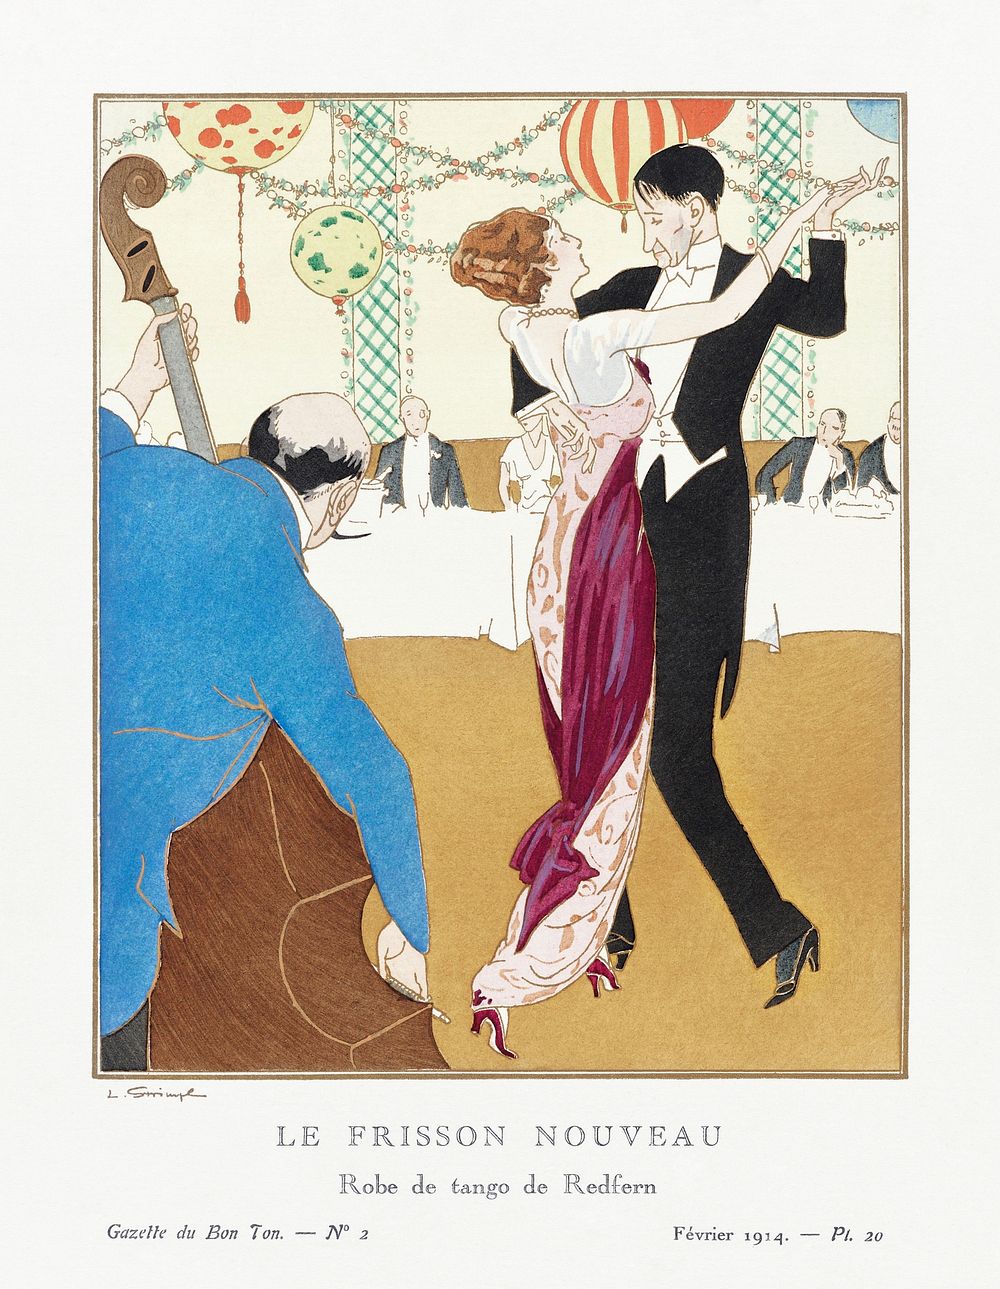 Le Frisson Nouveau: Robe de tango de Redfern (1914) by Ludwik Strimpl, published in Gazette de Bon Ton. Original from The…